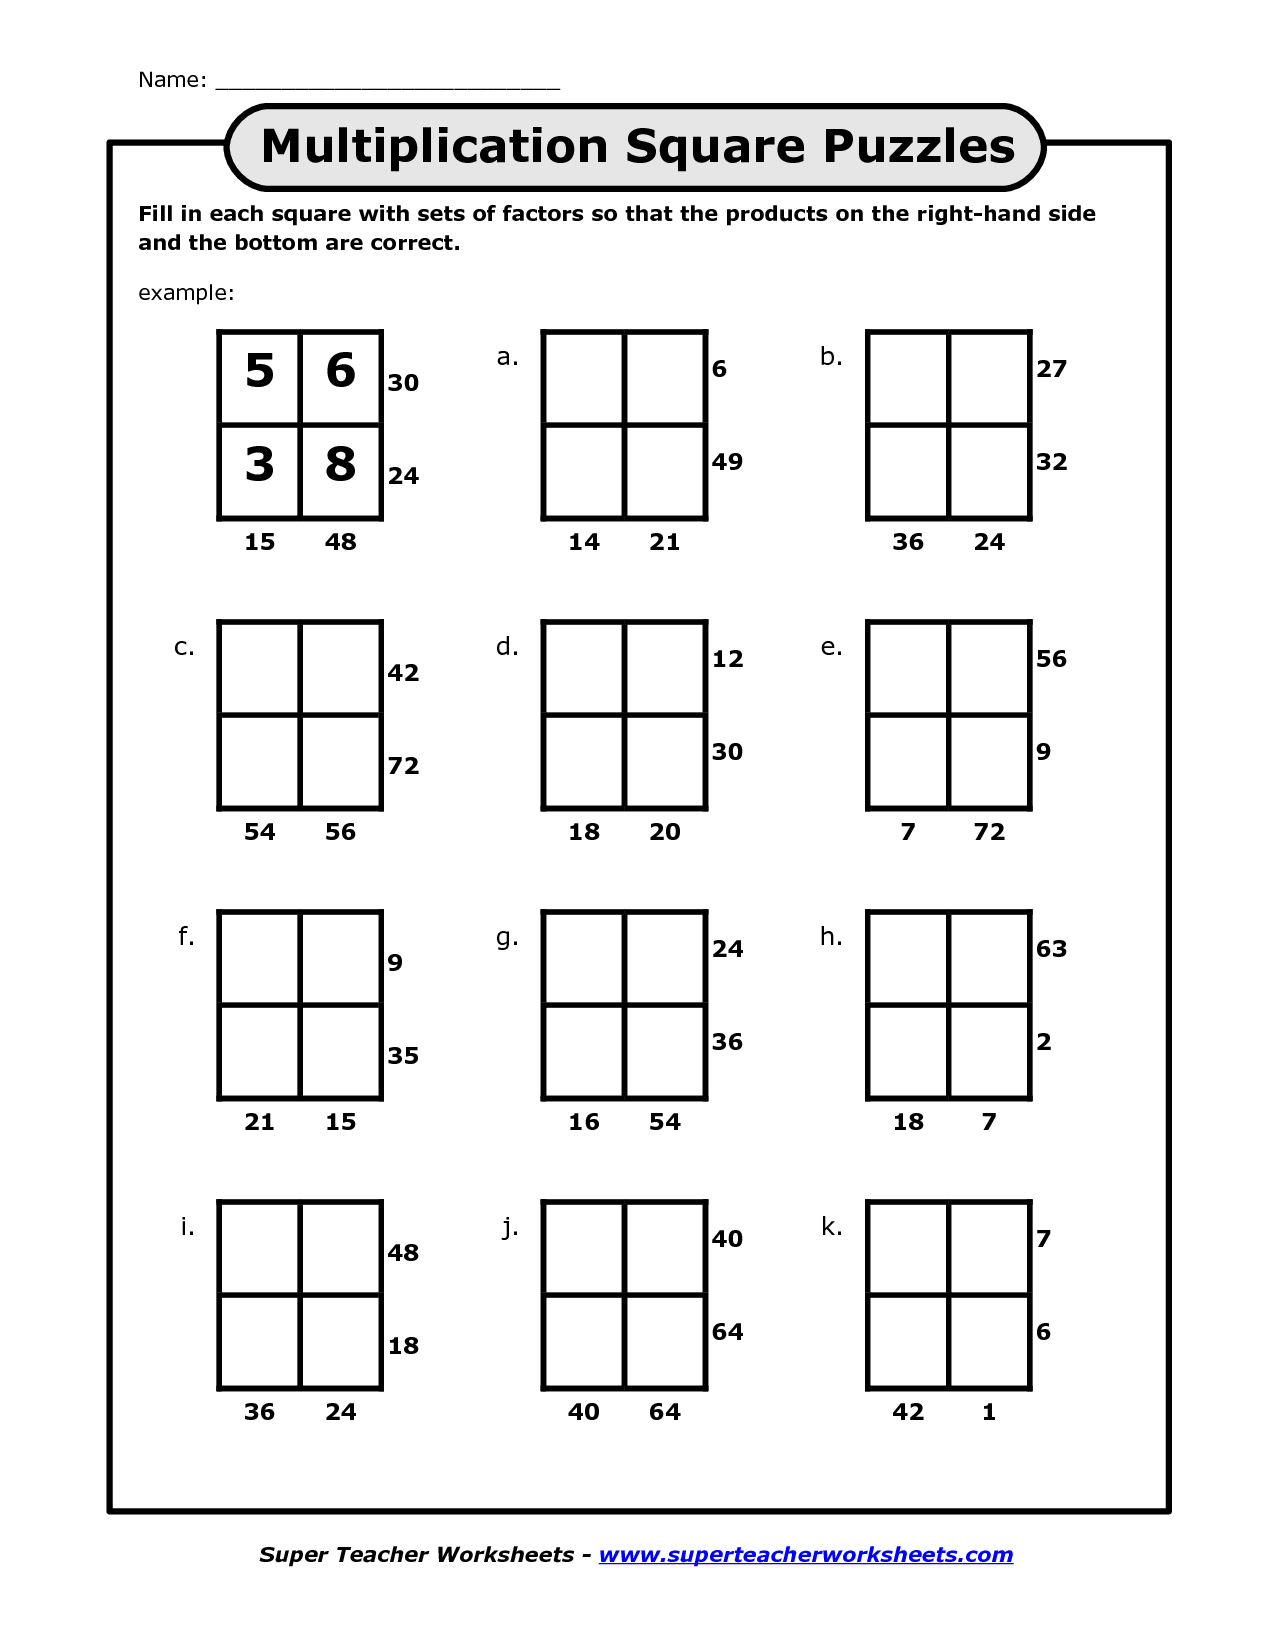 Blank Multiplication Squares Worksheets